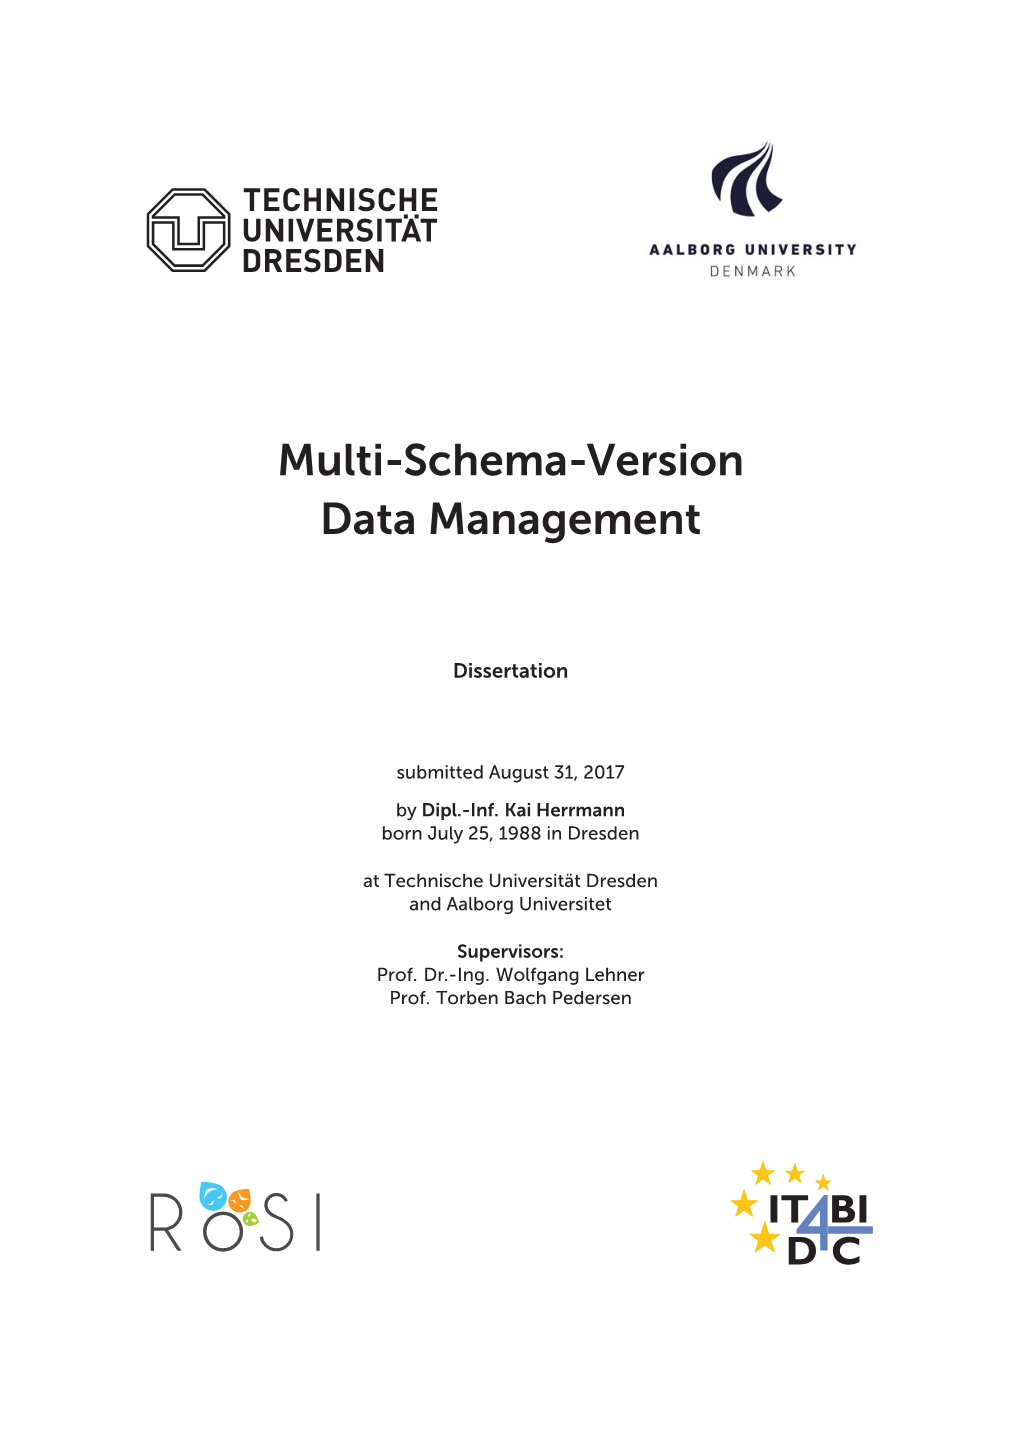 Multi-Schema-Version Data Management